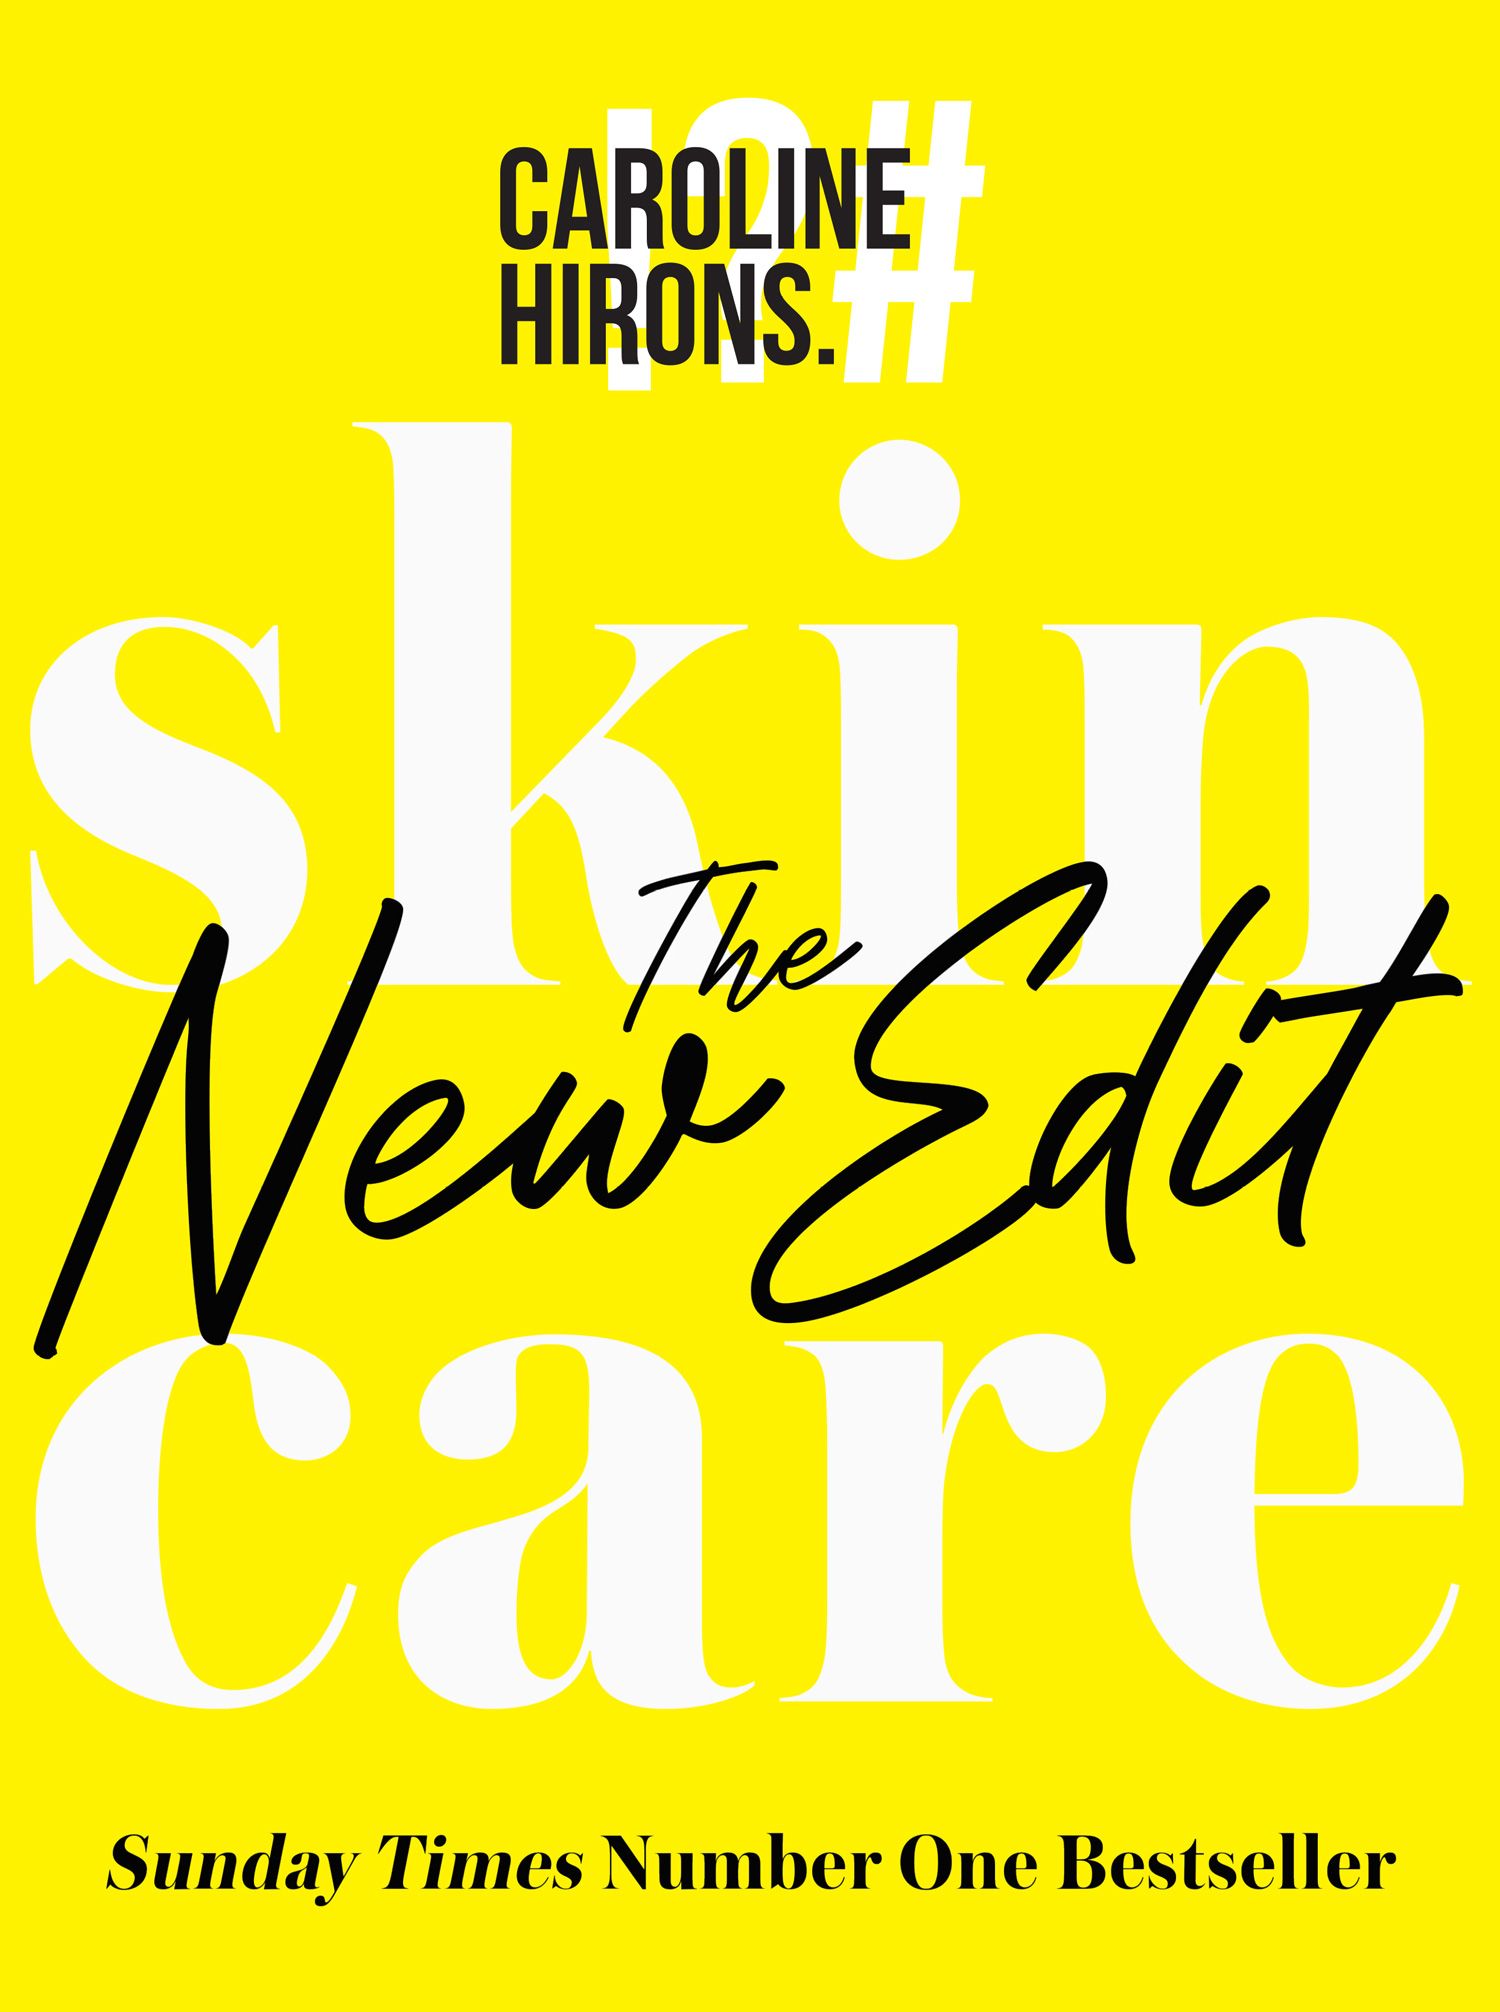 Skincare: The ultimate no-nonsense guide - HarperReach